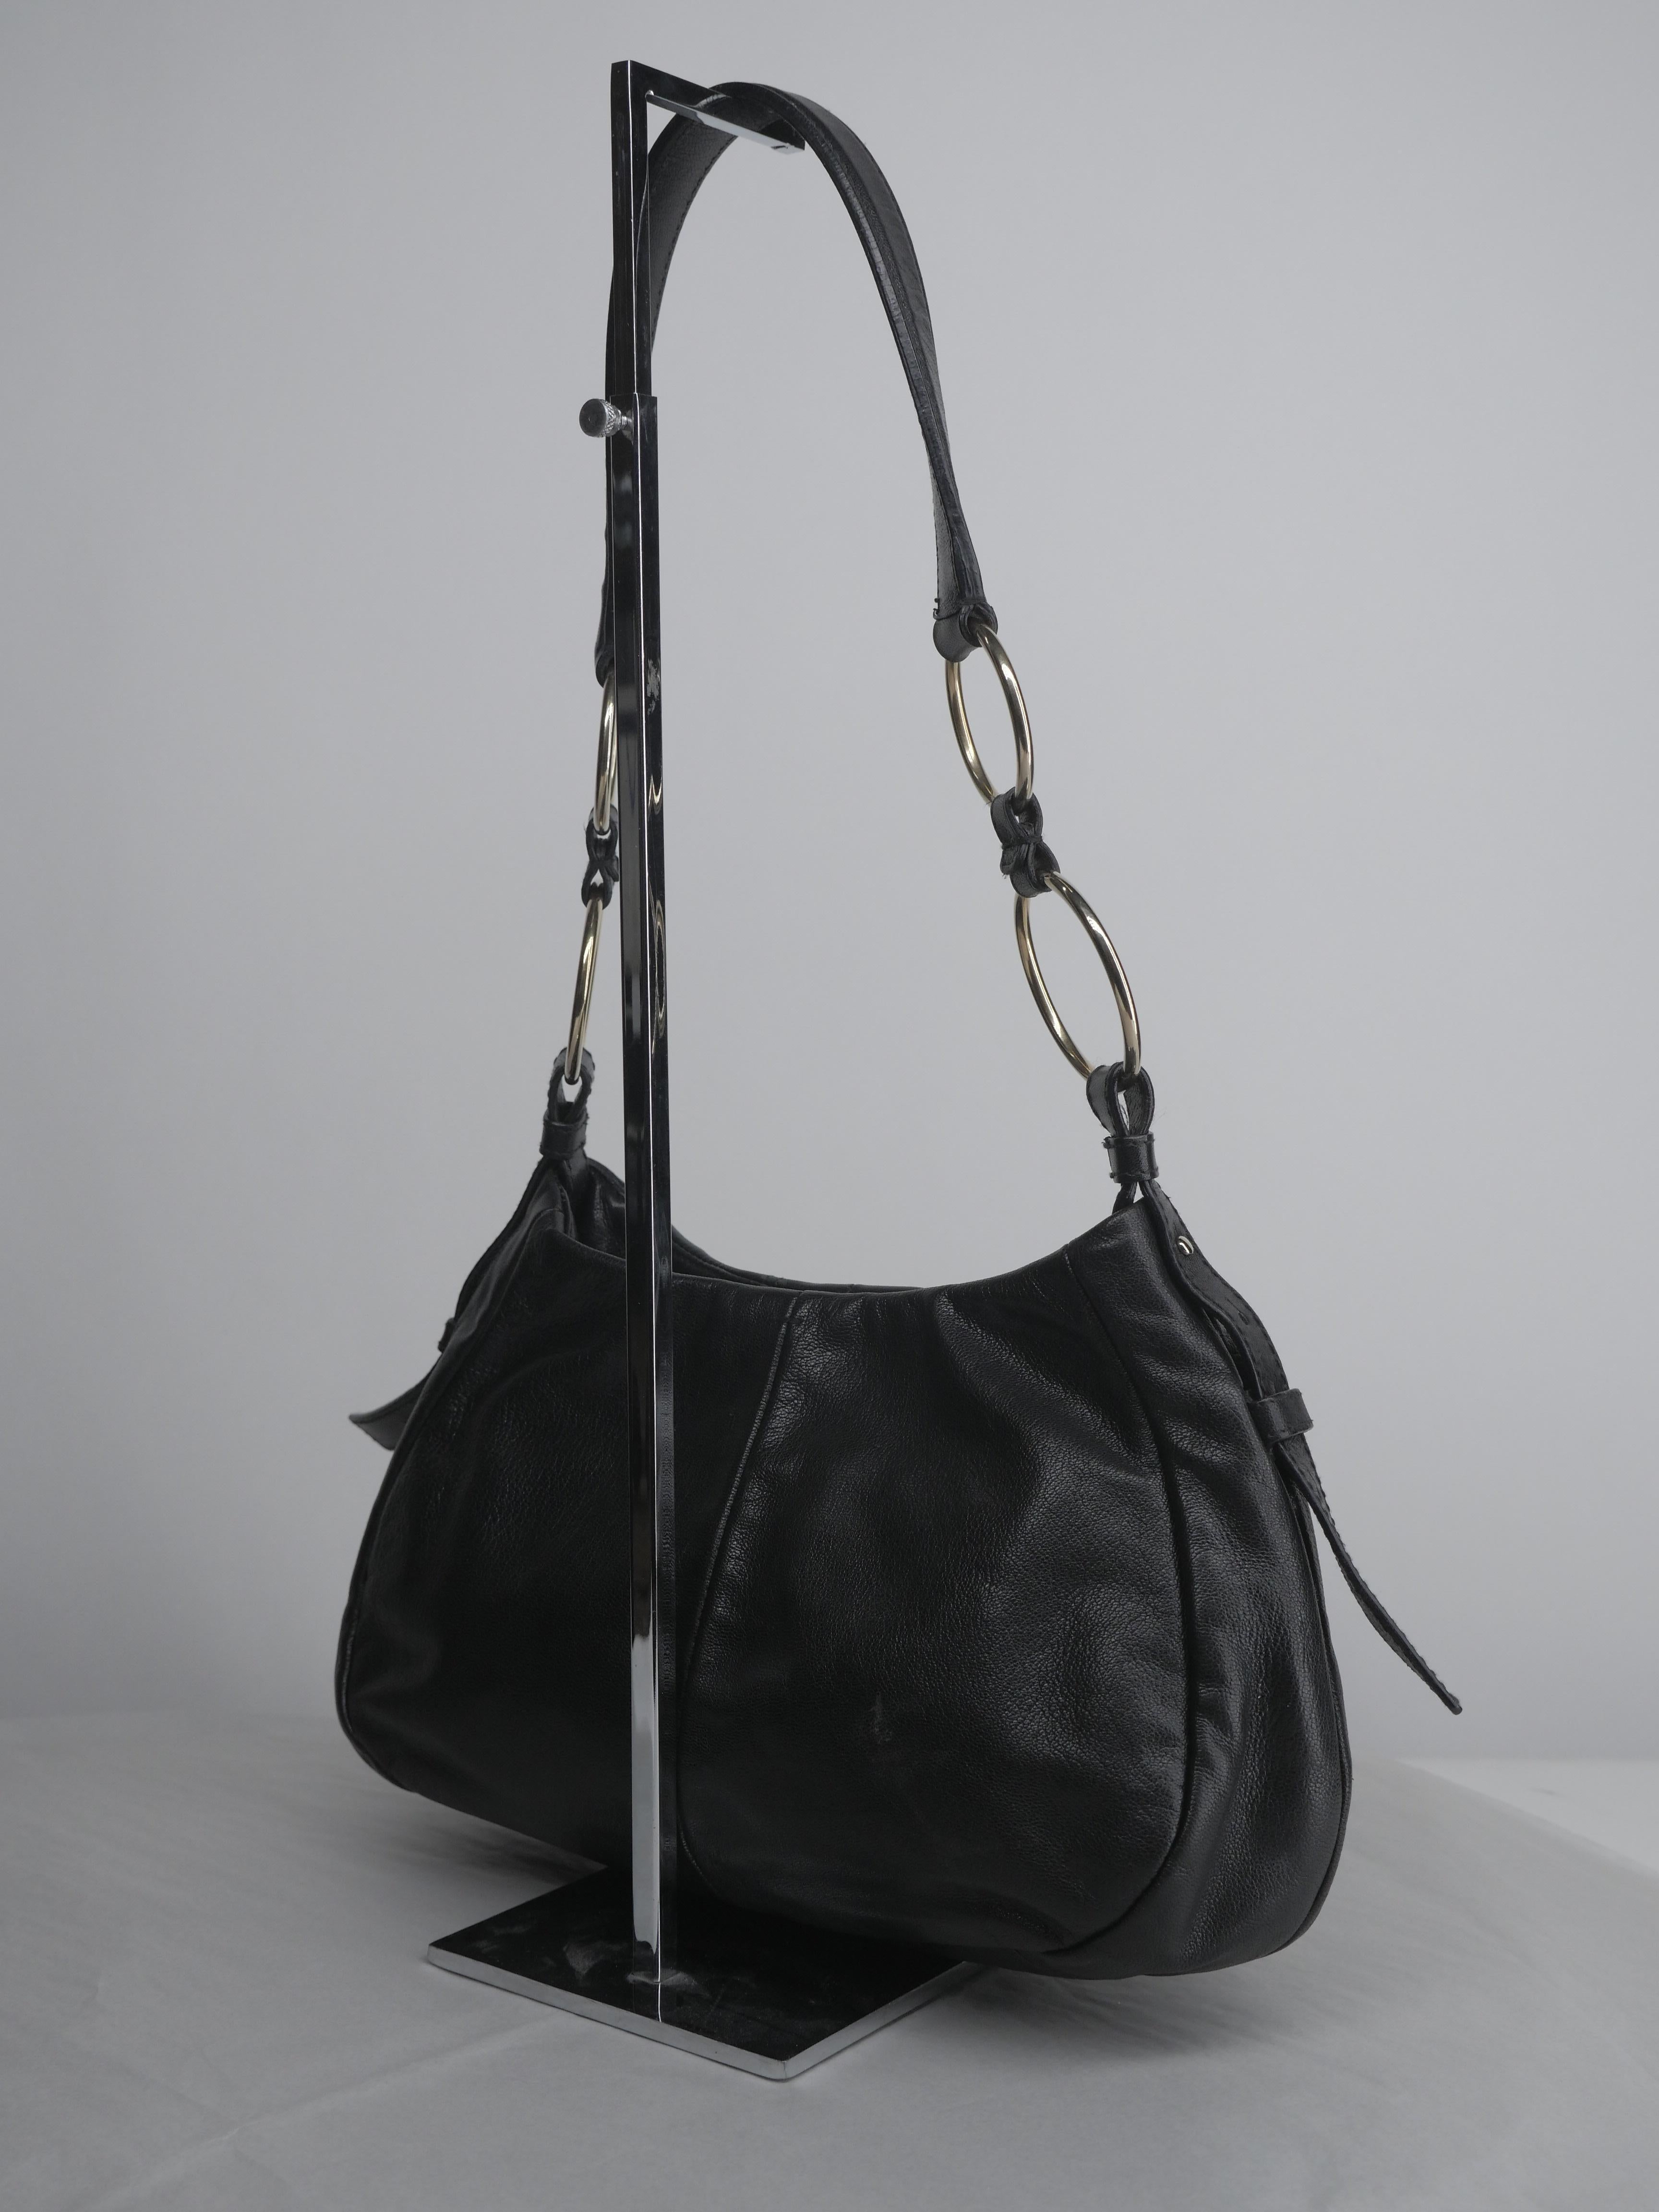 Yves Saint Laurent Black and Gold Hardware Shoulder Bag 2